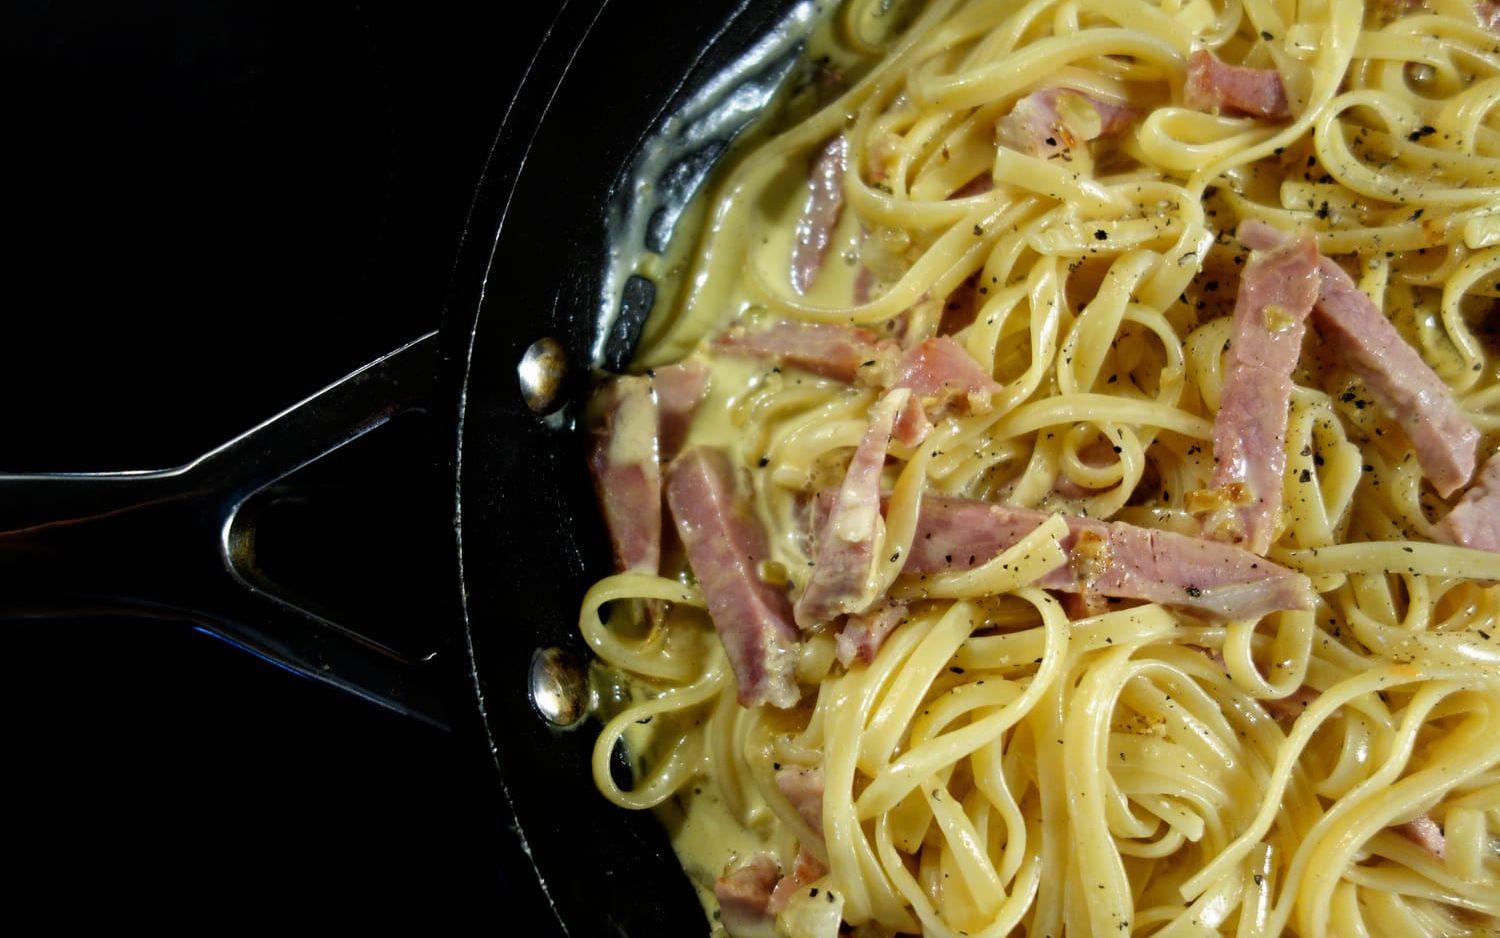 Kolarhustruns spaghetti. Svartpepparn symboliserar koldammet som lade sig över den nykokta pastan.